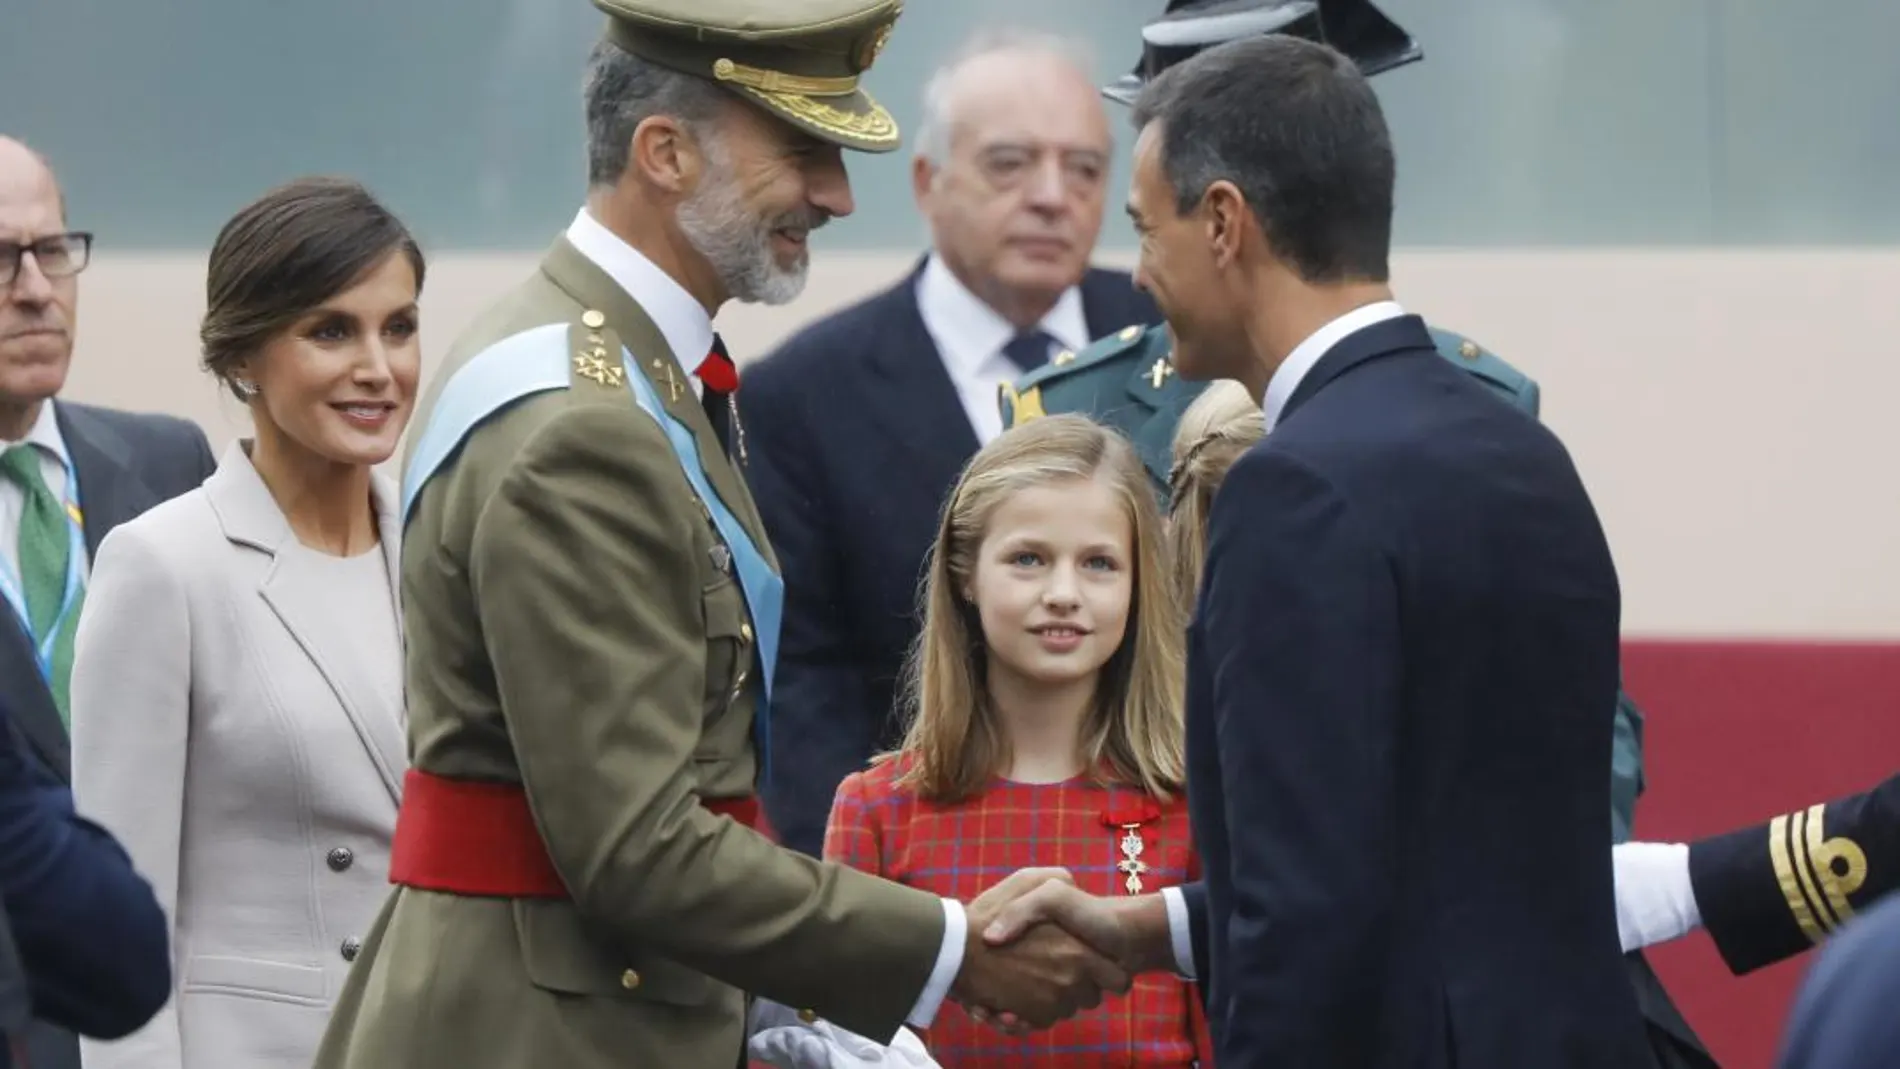 El presidente del Gobierno, Pedro Sánchez, saluda al Rey Felipe VI ante la presencia de la princesa Leonor y doña Letizia. Foto: Jesús G. Feria